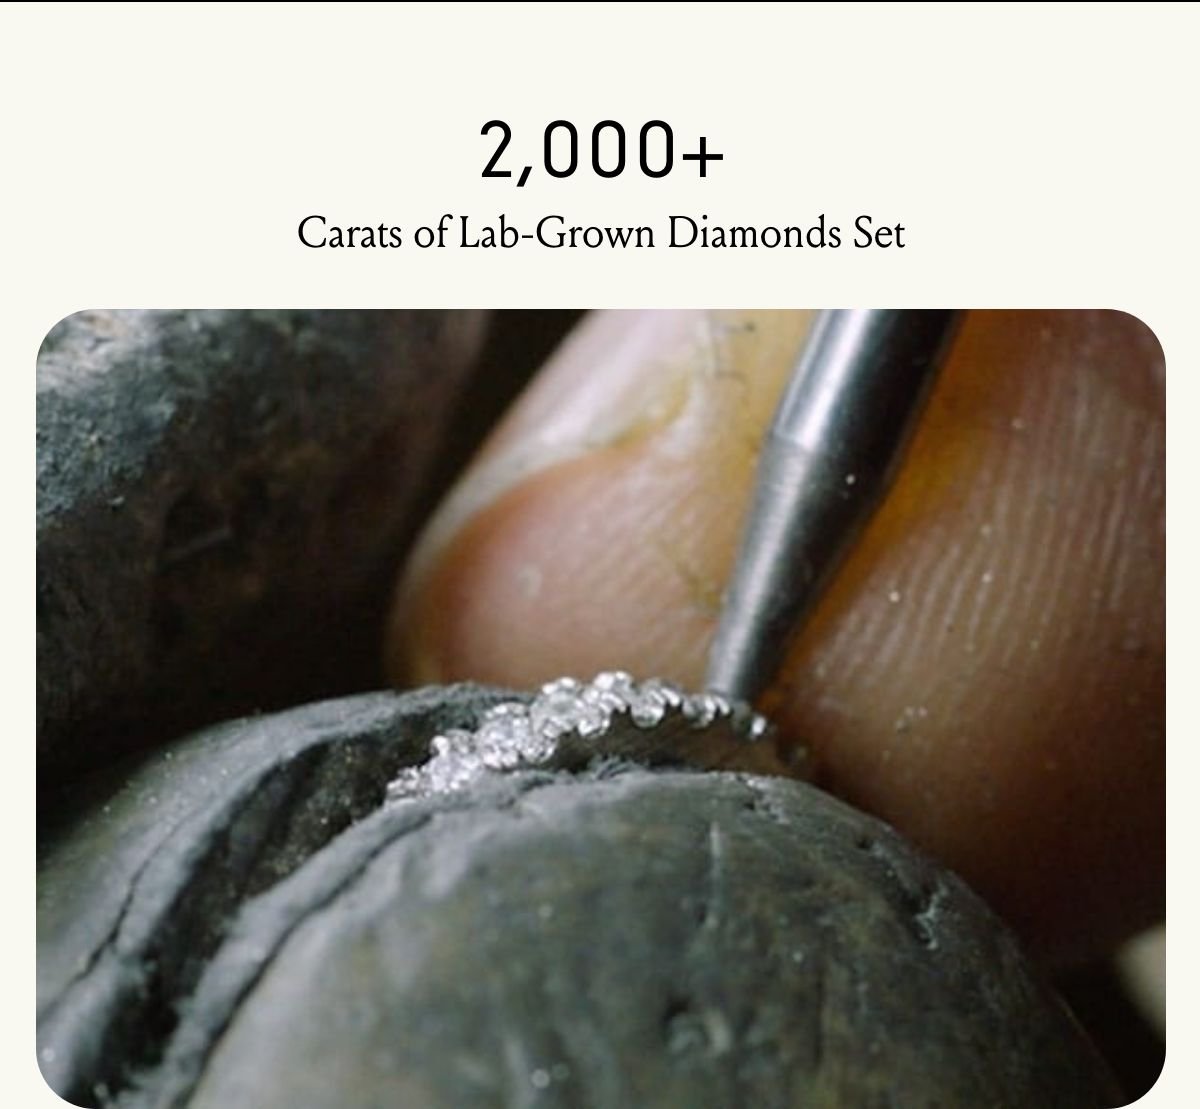 2,000 Carats of lab-grown diamonds set